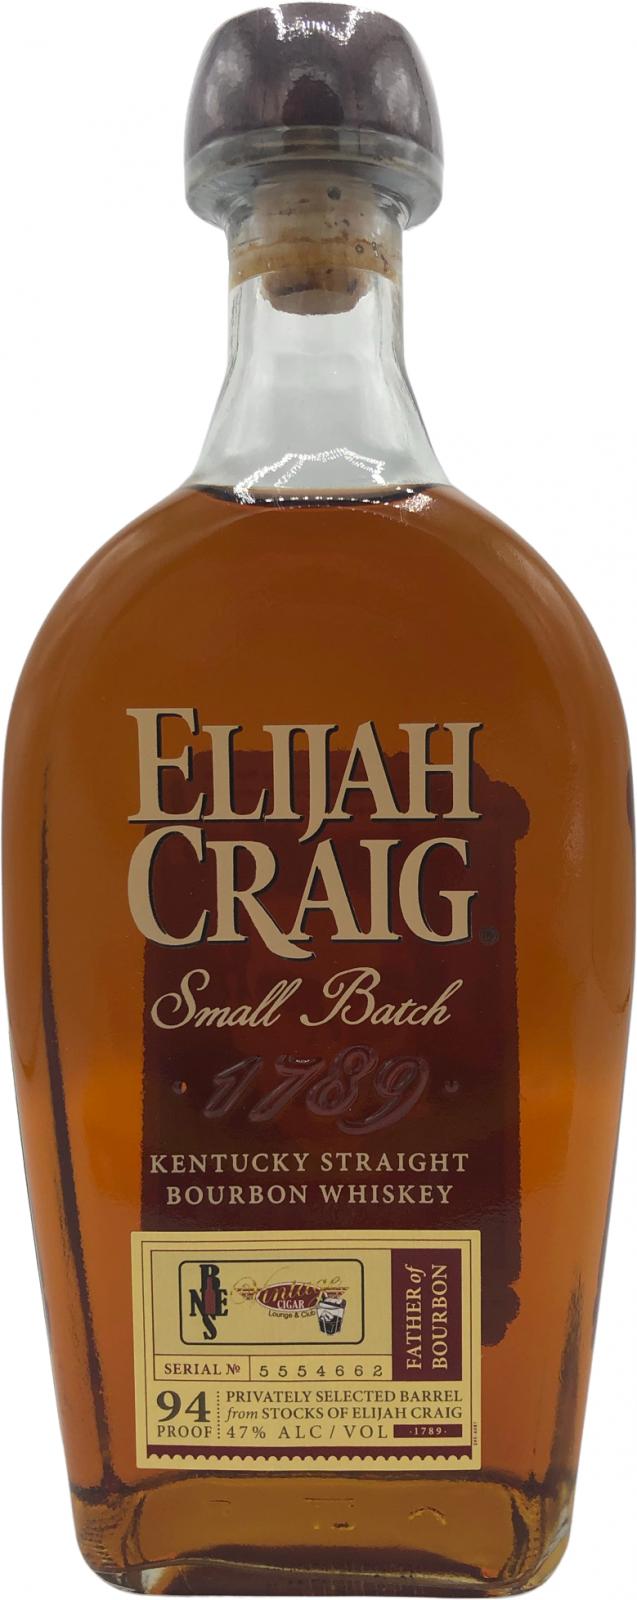 Elijah Craig Small Batch Kentucky Straight Bourbon #5554662 47% 750ml